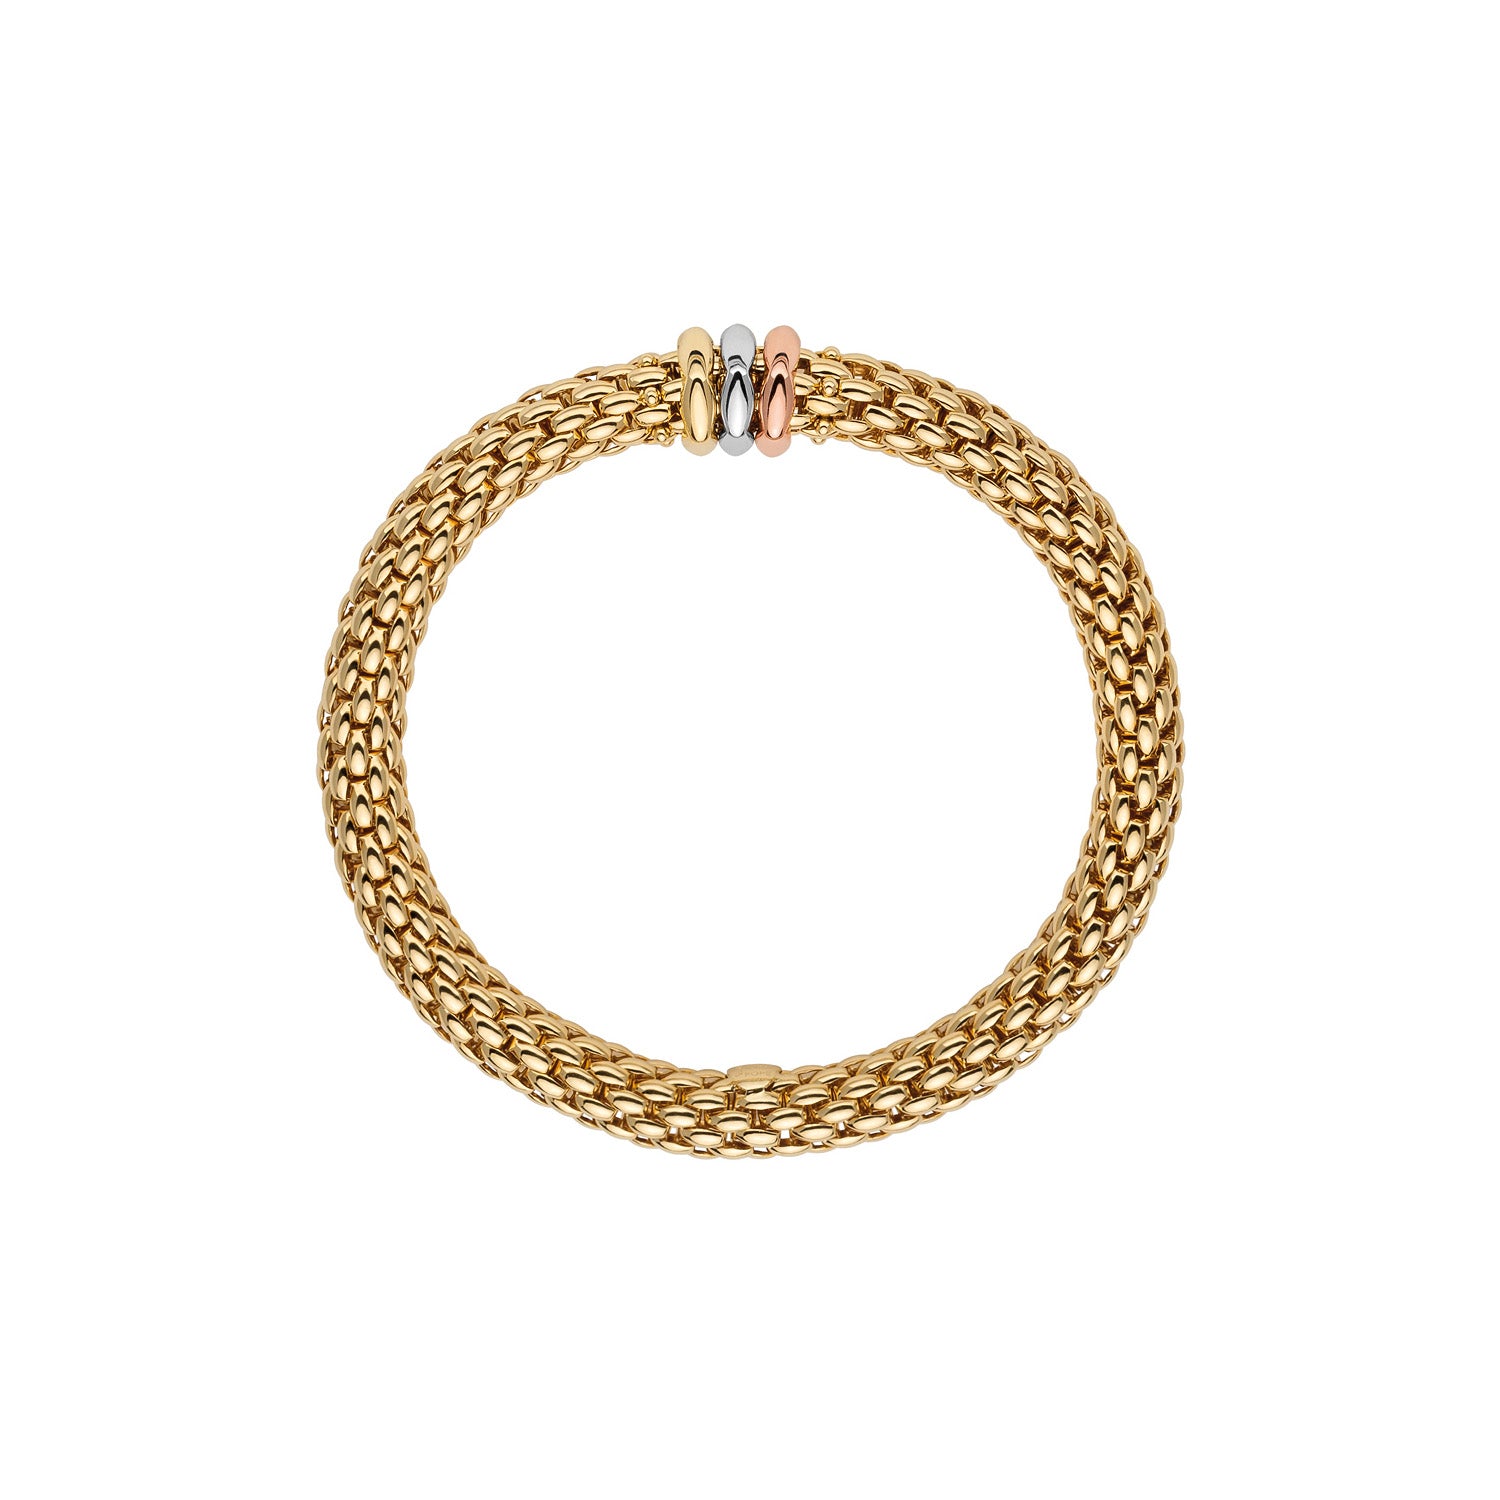 Flex'it Love Nest bracelet in yellow gold